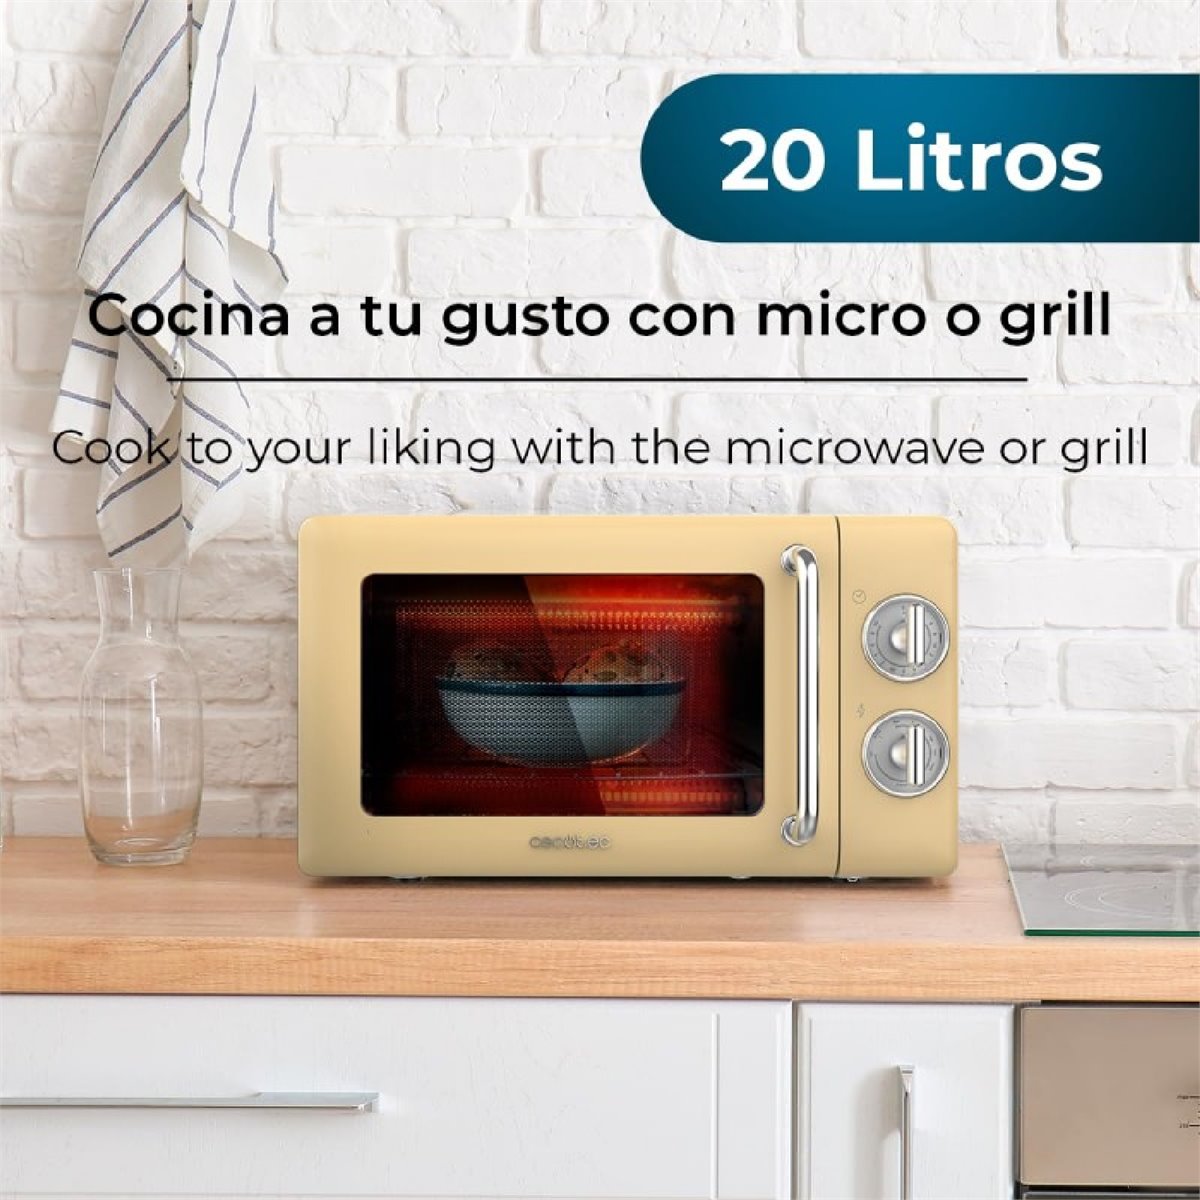 Microondas con grill - Conforama